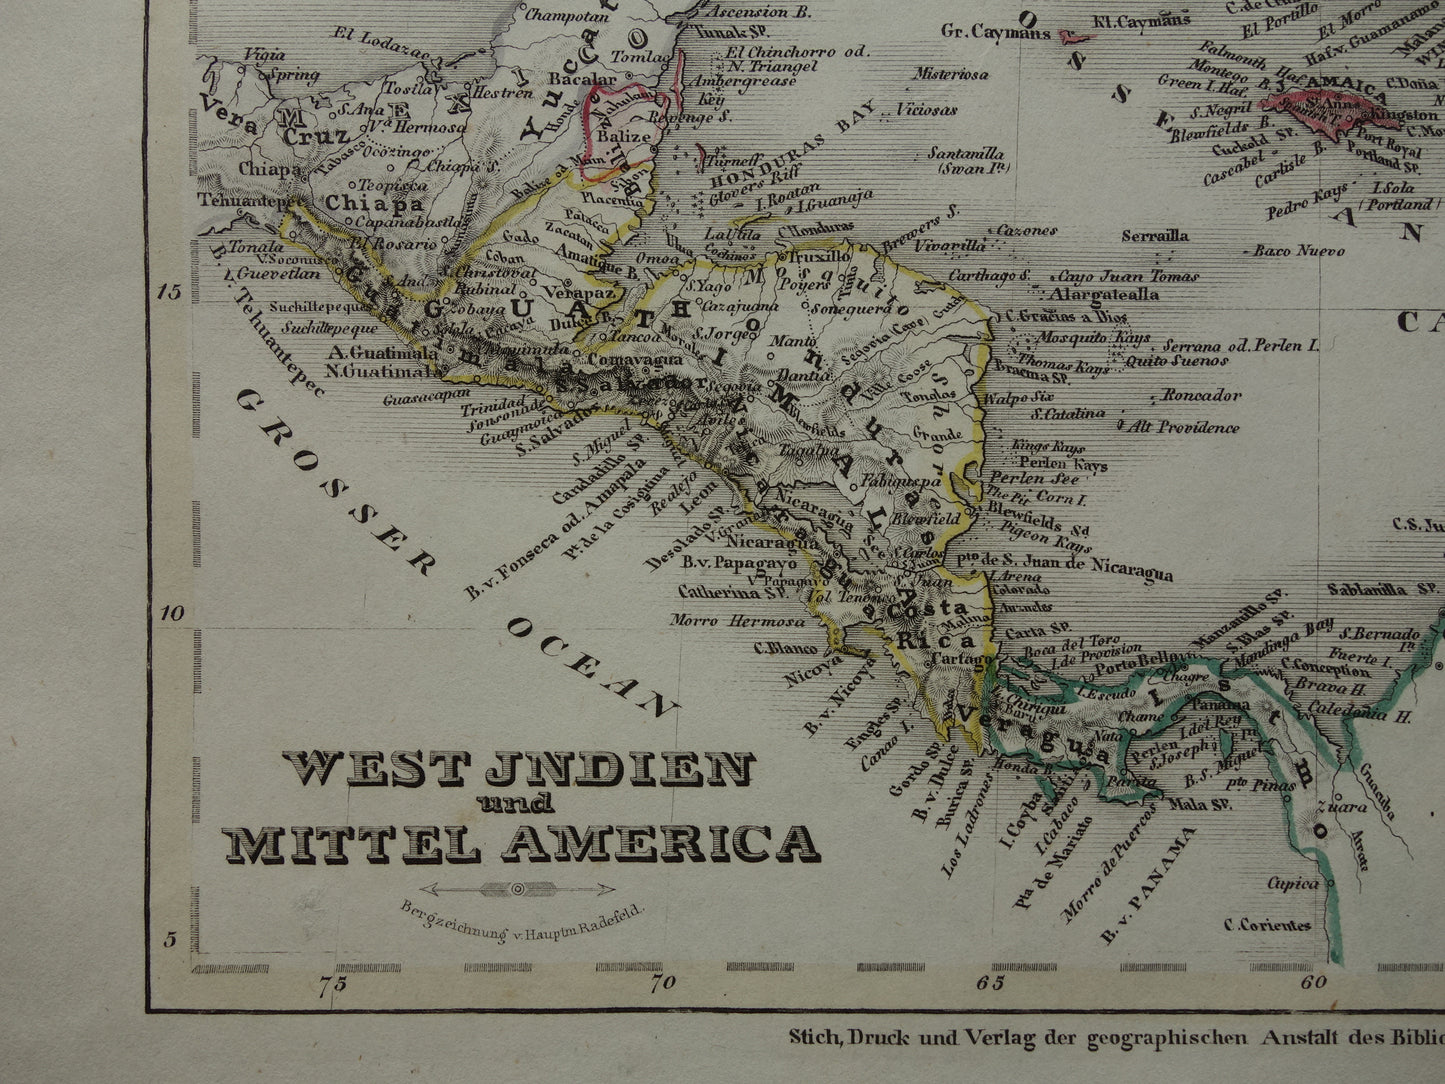 Oude kaart van ANTILLEN 175+ jaar oude handgekleurde landkaart Curaçao Aruba Cuba Haïti Puerto Rico Caribisch Gebied